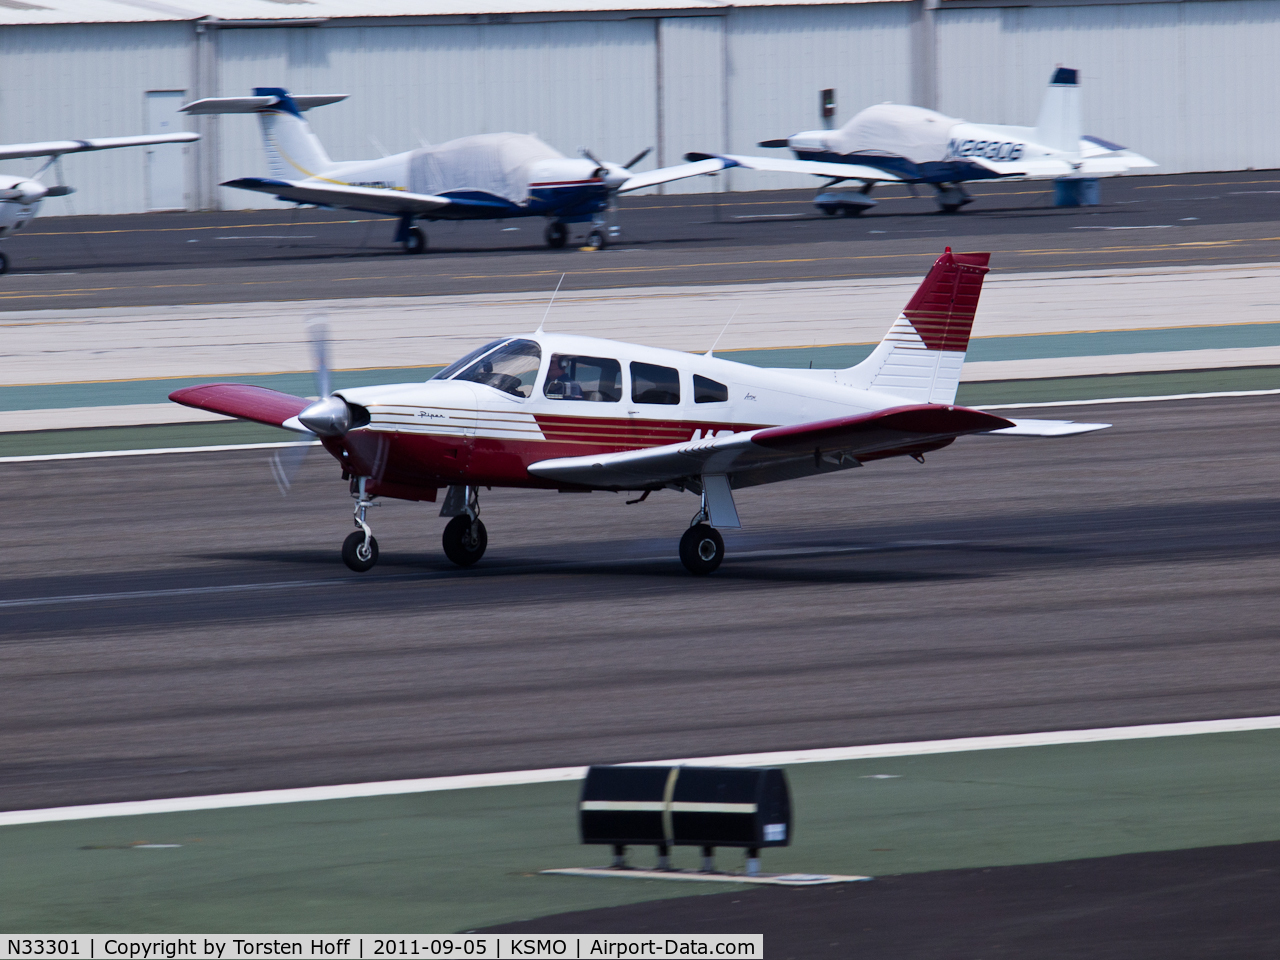 N33301, 1975 Piper PA-28R-200 Arrow C/N 28R-7535130, N33301 arriving on RWY 21